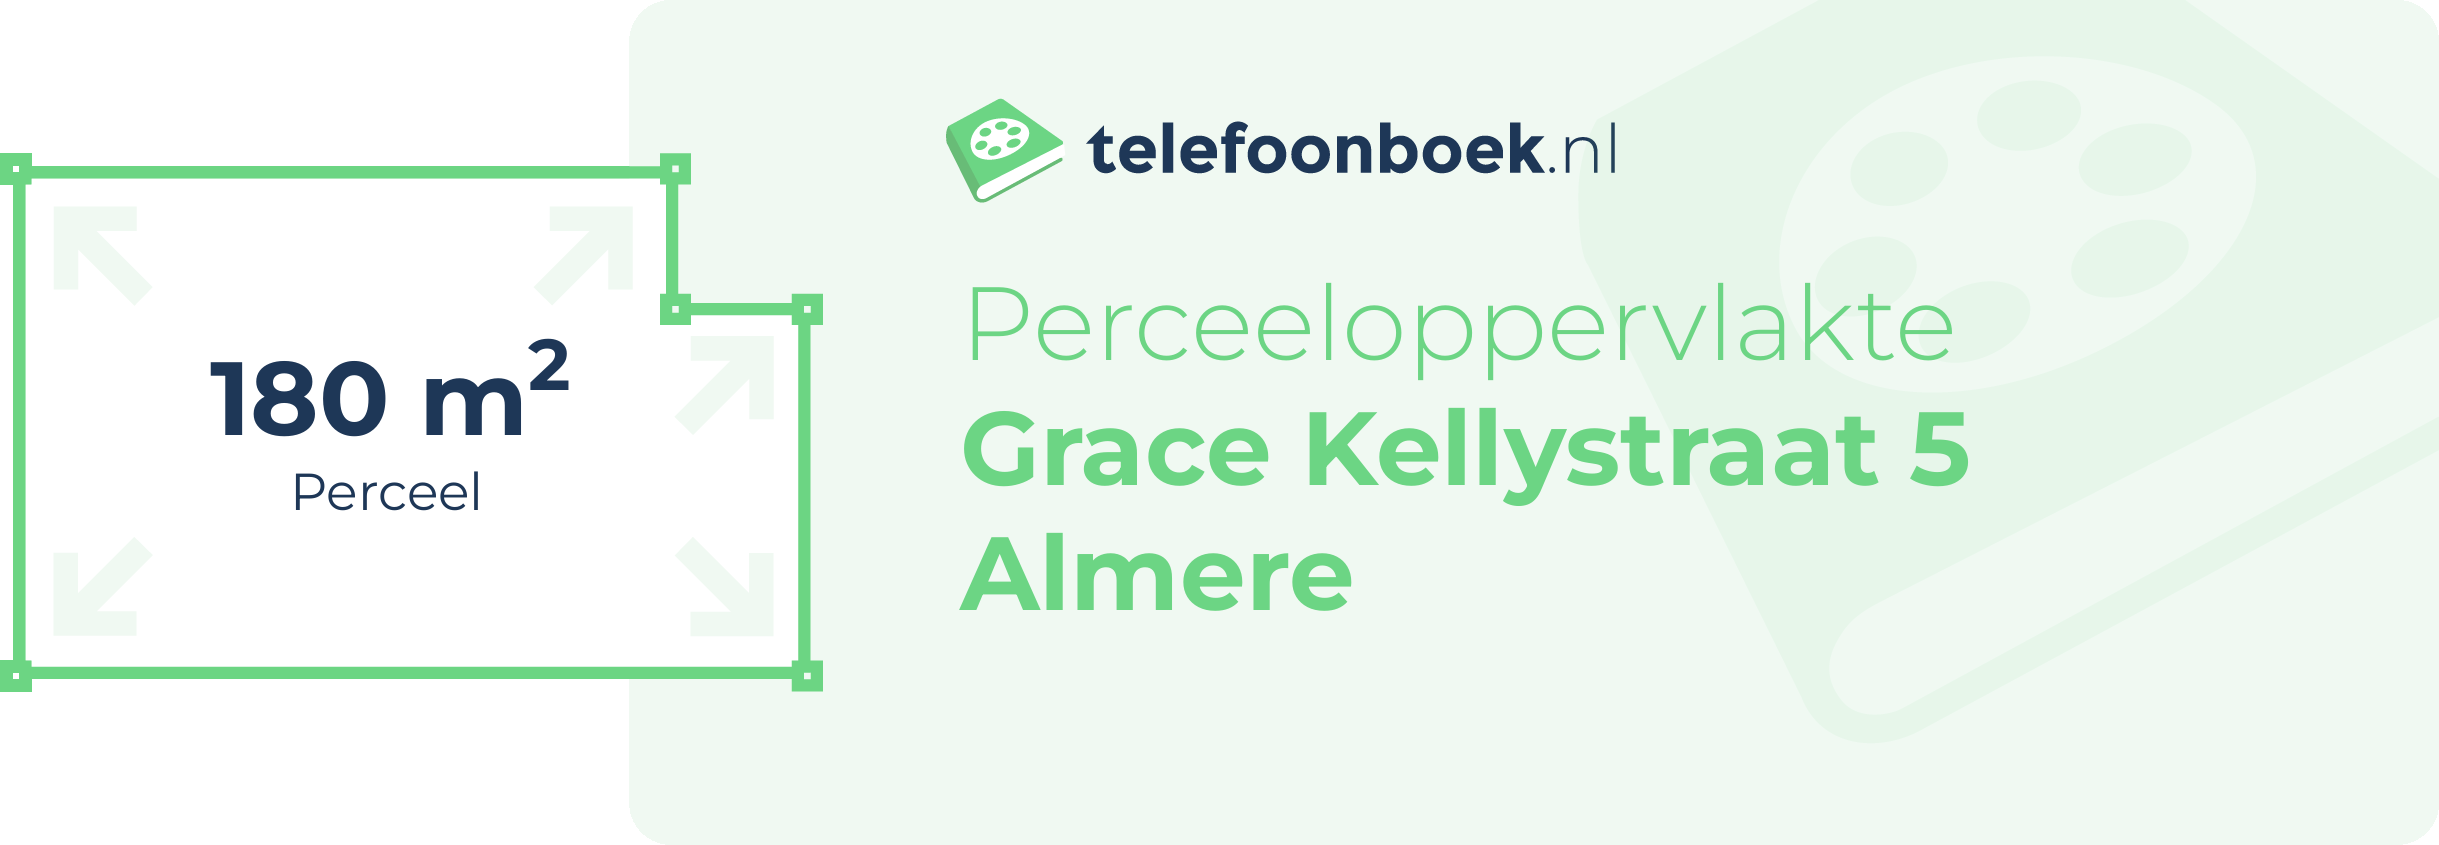 Perceeloppervlakte Grace Kellystraat 5 Almere